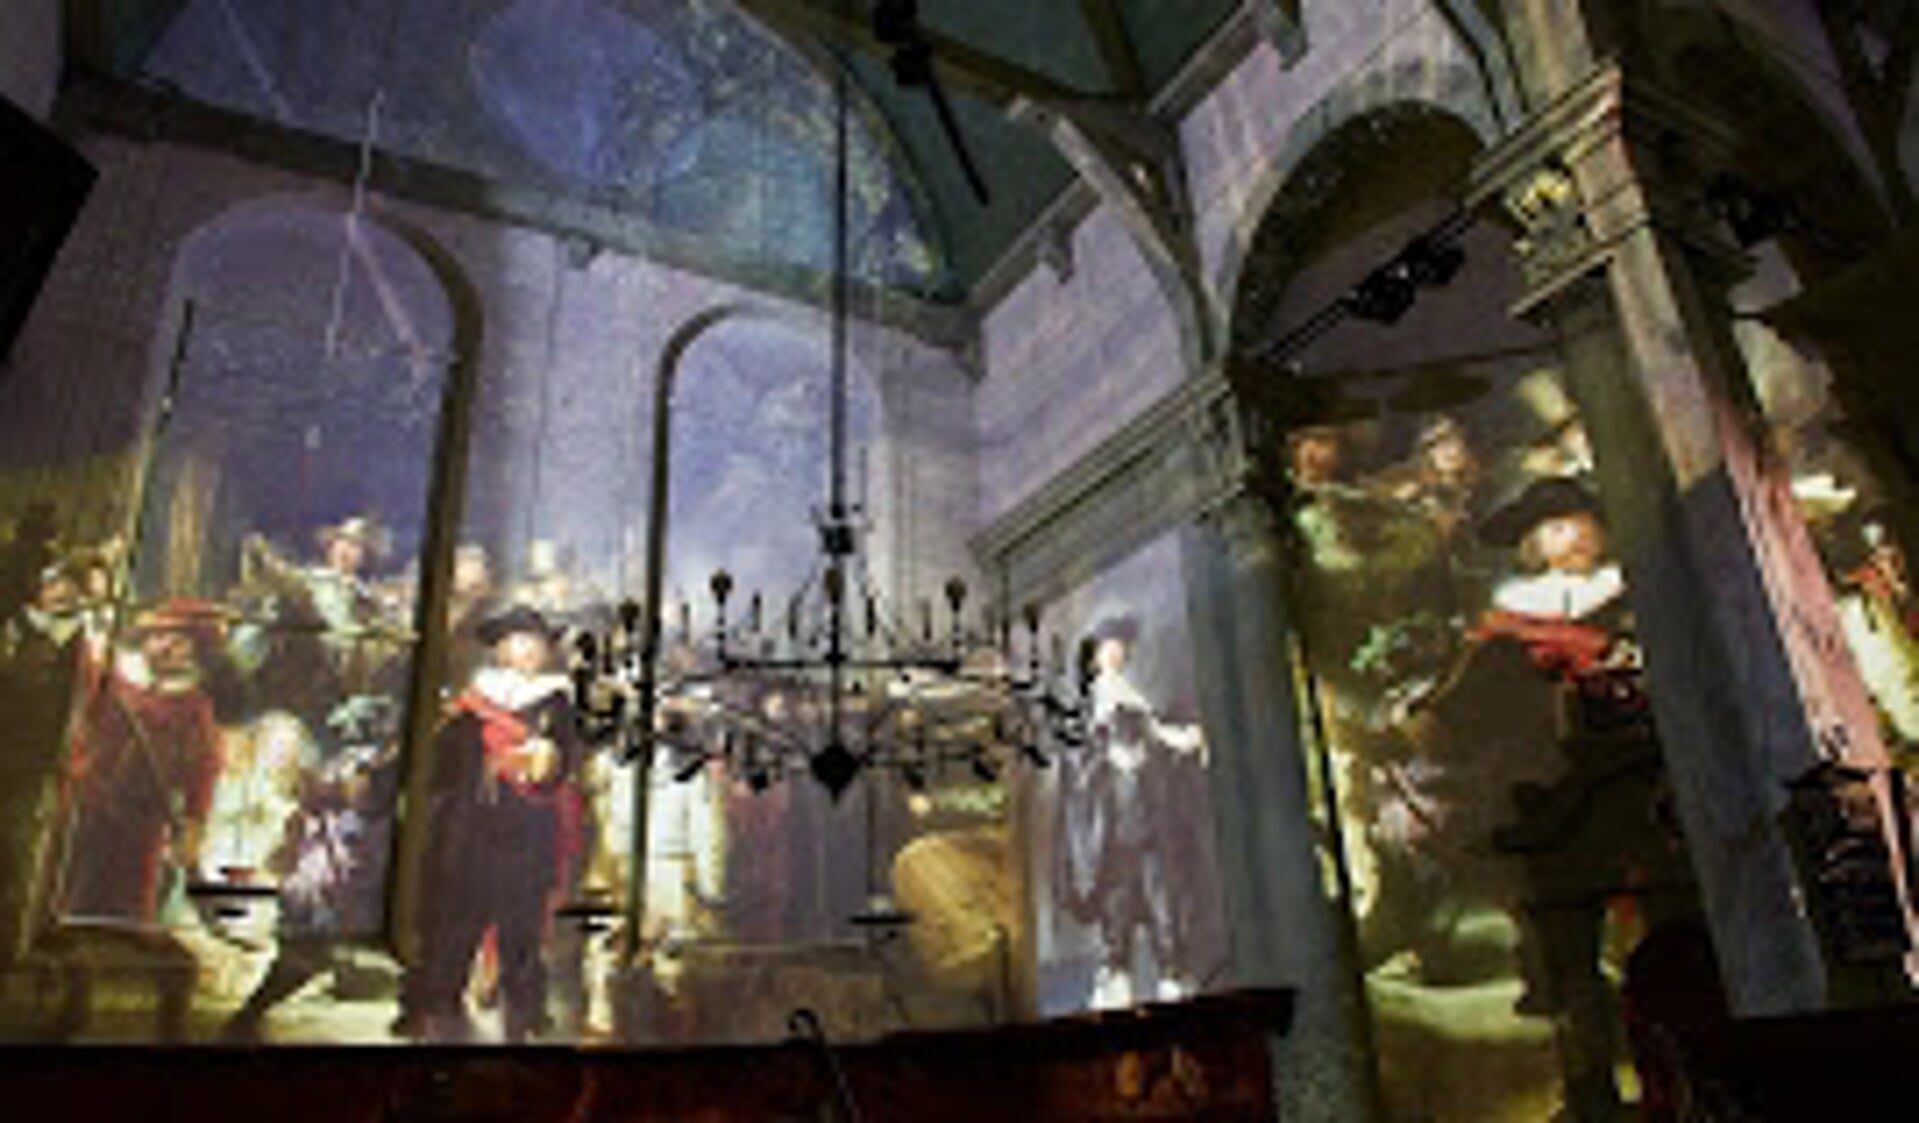 De Noorderkerk is het podium waar Van Gogh en Rembrandt elkaar ontmoeten in een expositie.